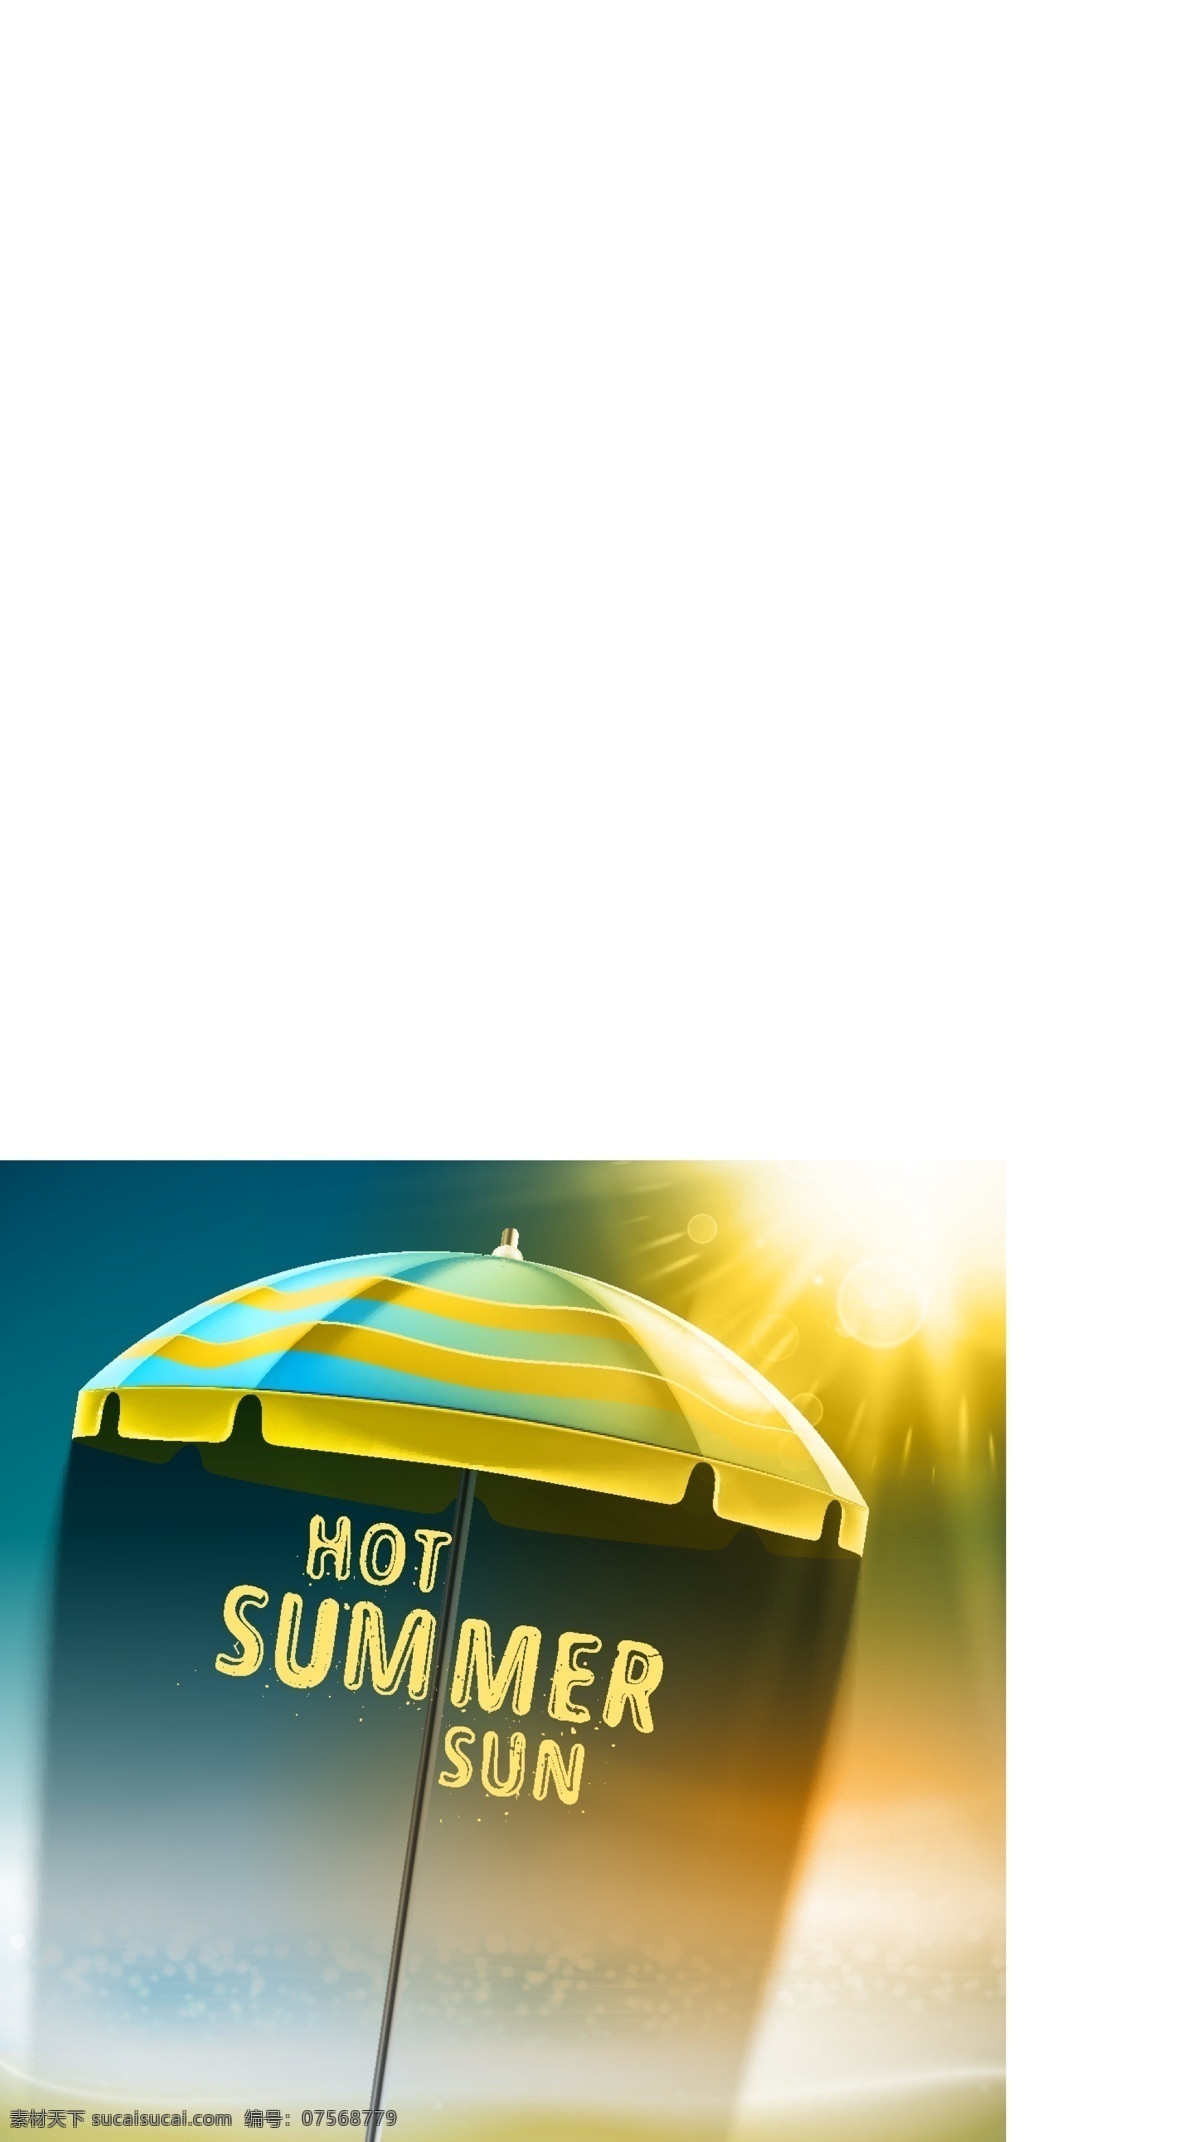 太阳与遮阳伞 太阳 遮阳伞 夏日海报 夏季海报 行业标志 标志图标 矢量素材 黄色